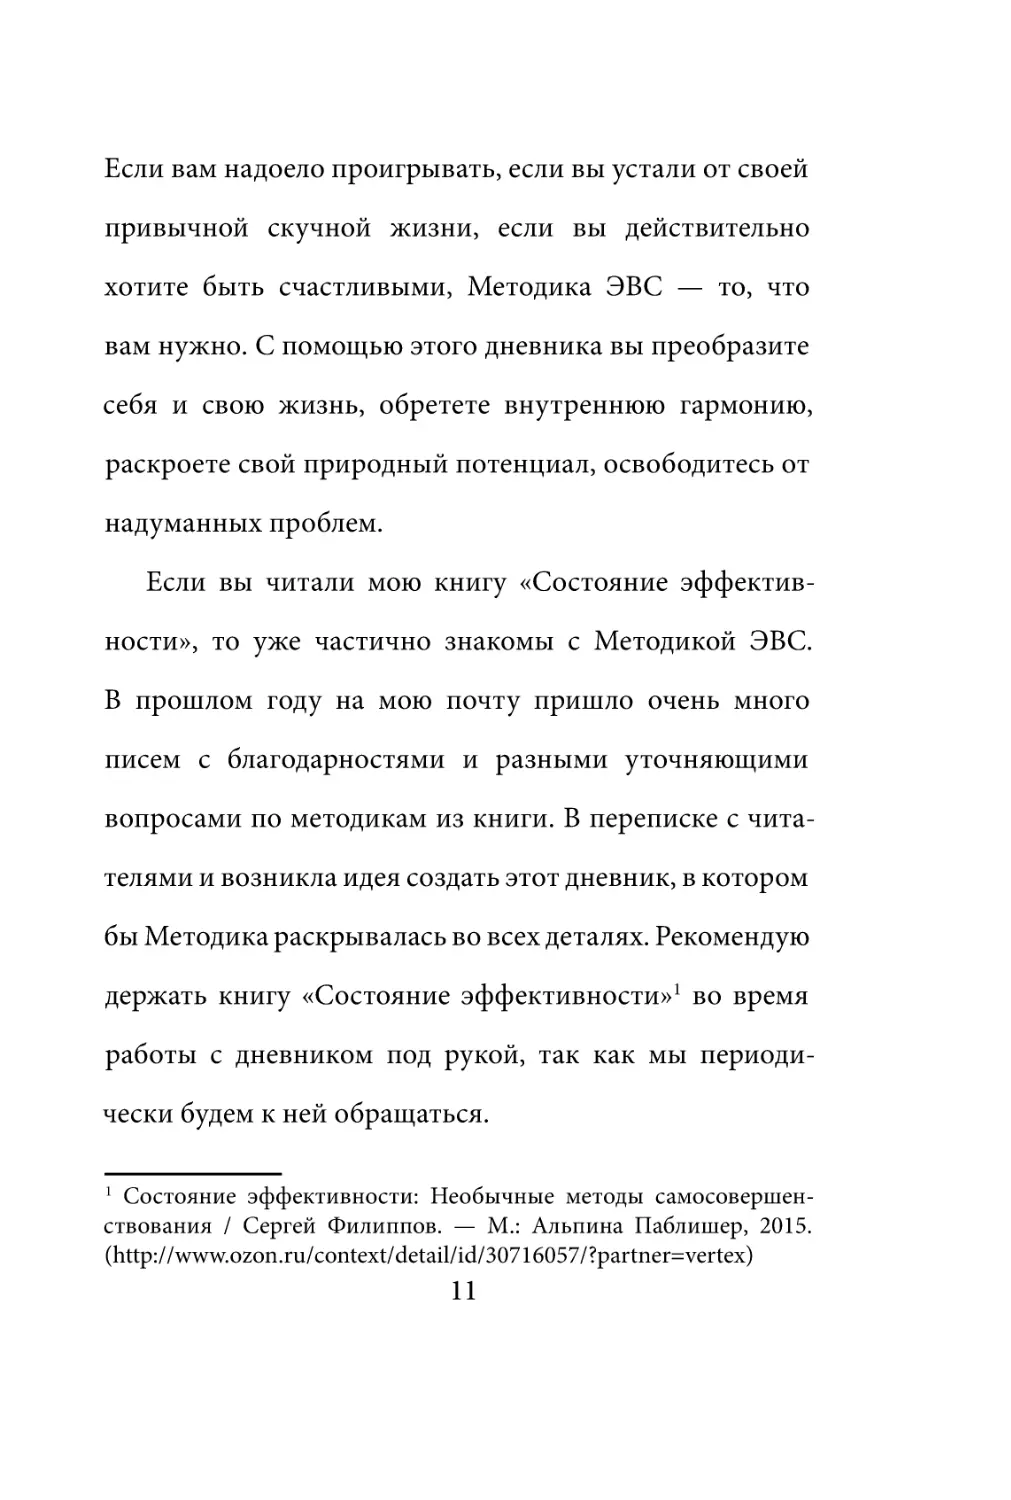 Sergey_Filippov_Dnevnik_samorazvitia_Evolyutsia_Vnutrennego_Sostoyania_11.pdf (p.11)